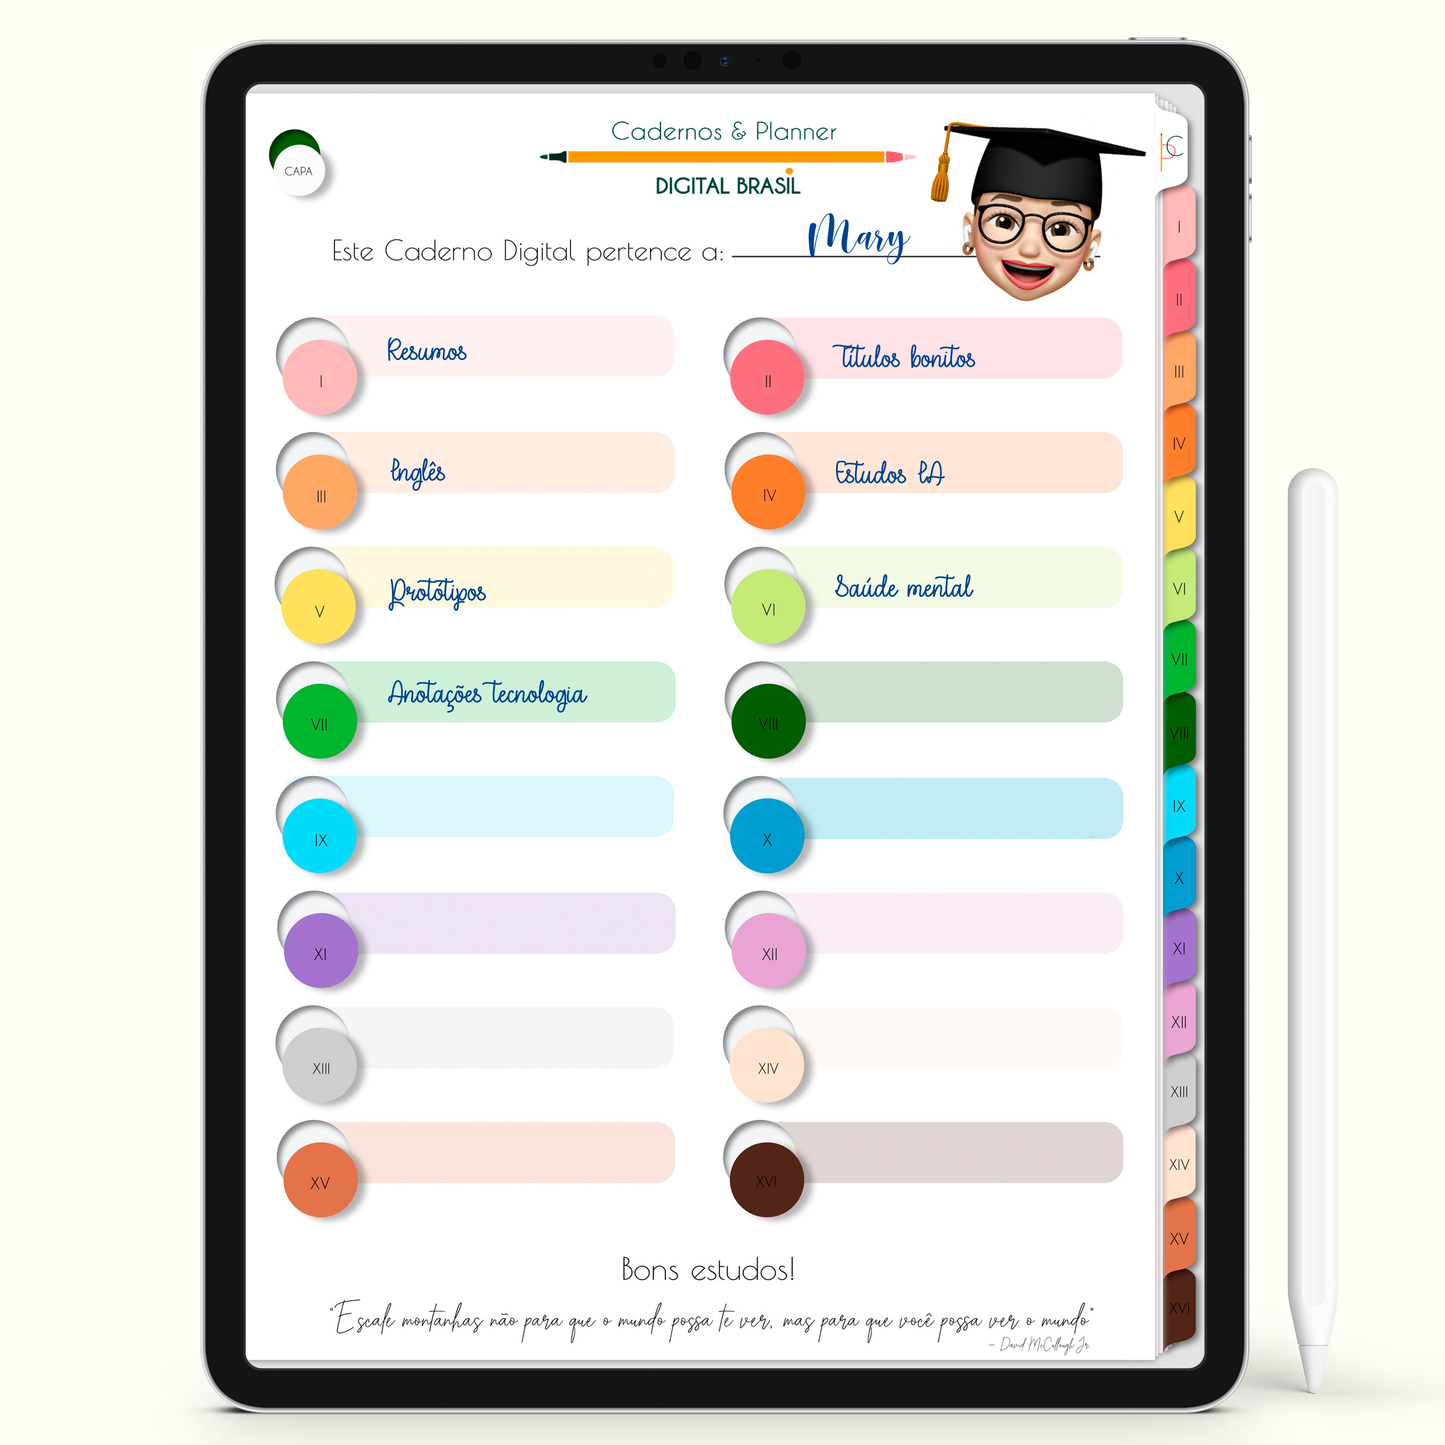 Caderno Digital Colors 16 Matérias - página Home com todas as matérias clicáveis para iPad e Tablet Android. Cadernos & Planner Digital Brasil